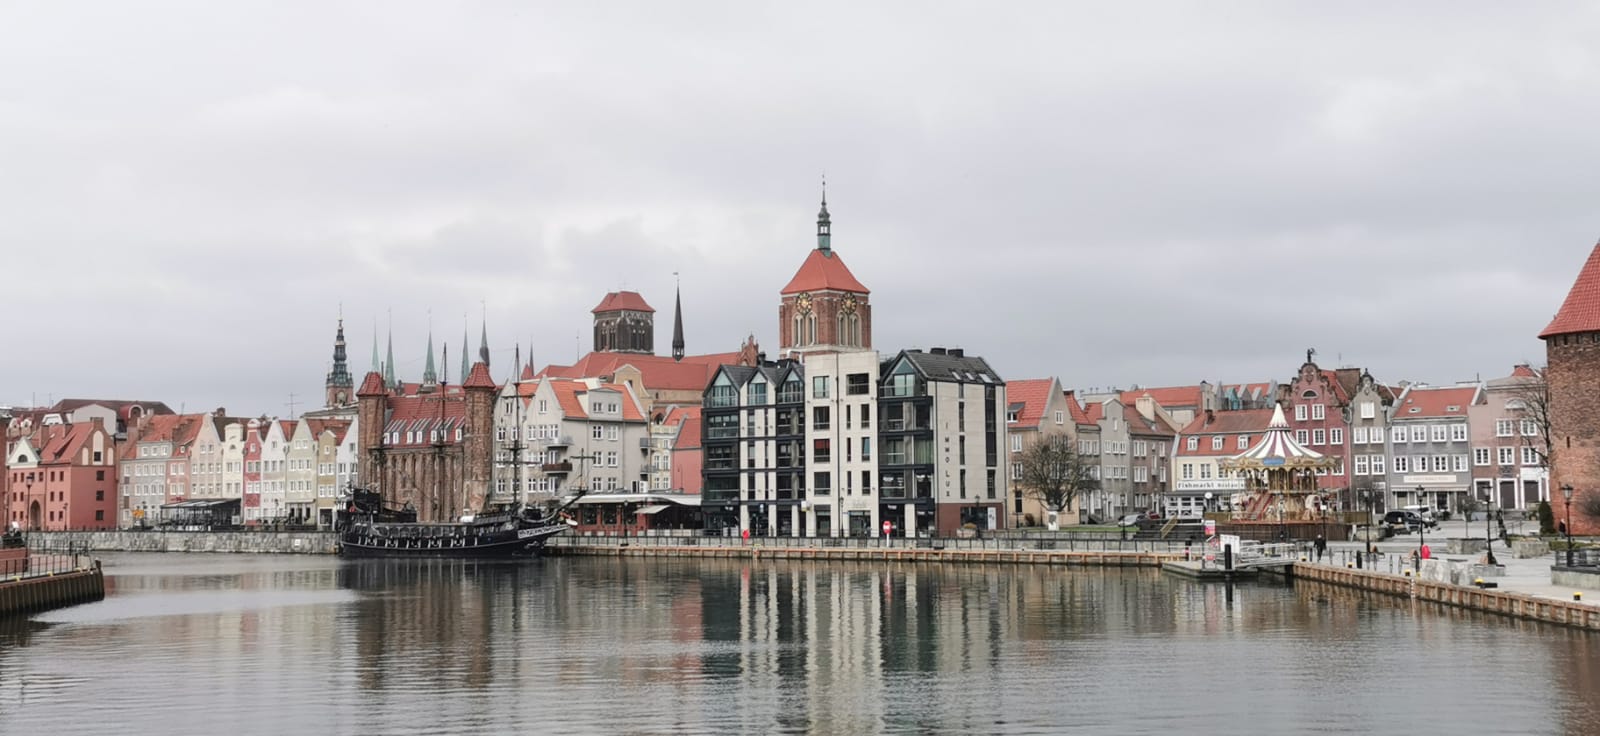 Keterangan Foto : Kota Gdansk, di Pinggir Laut Baltik yang Merupakan Salah Satu Pelabuhan Laut di Polandia Tempat Berangkatnya Orang-orang Polandia Mencari Penghidupan yang Lebih Baik di Luar Negeri